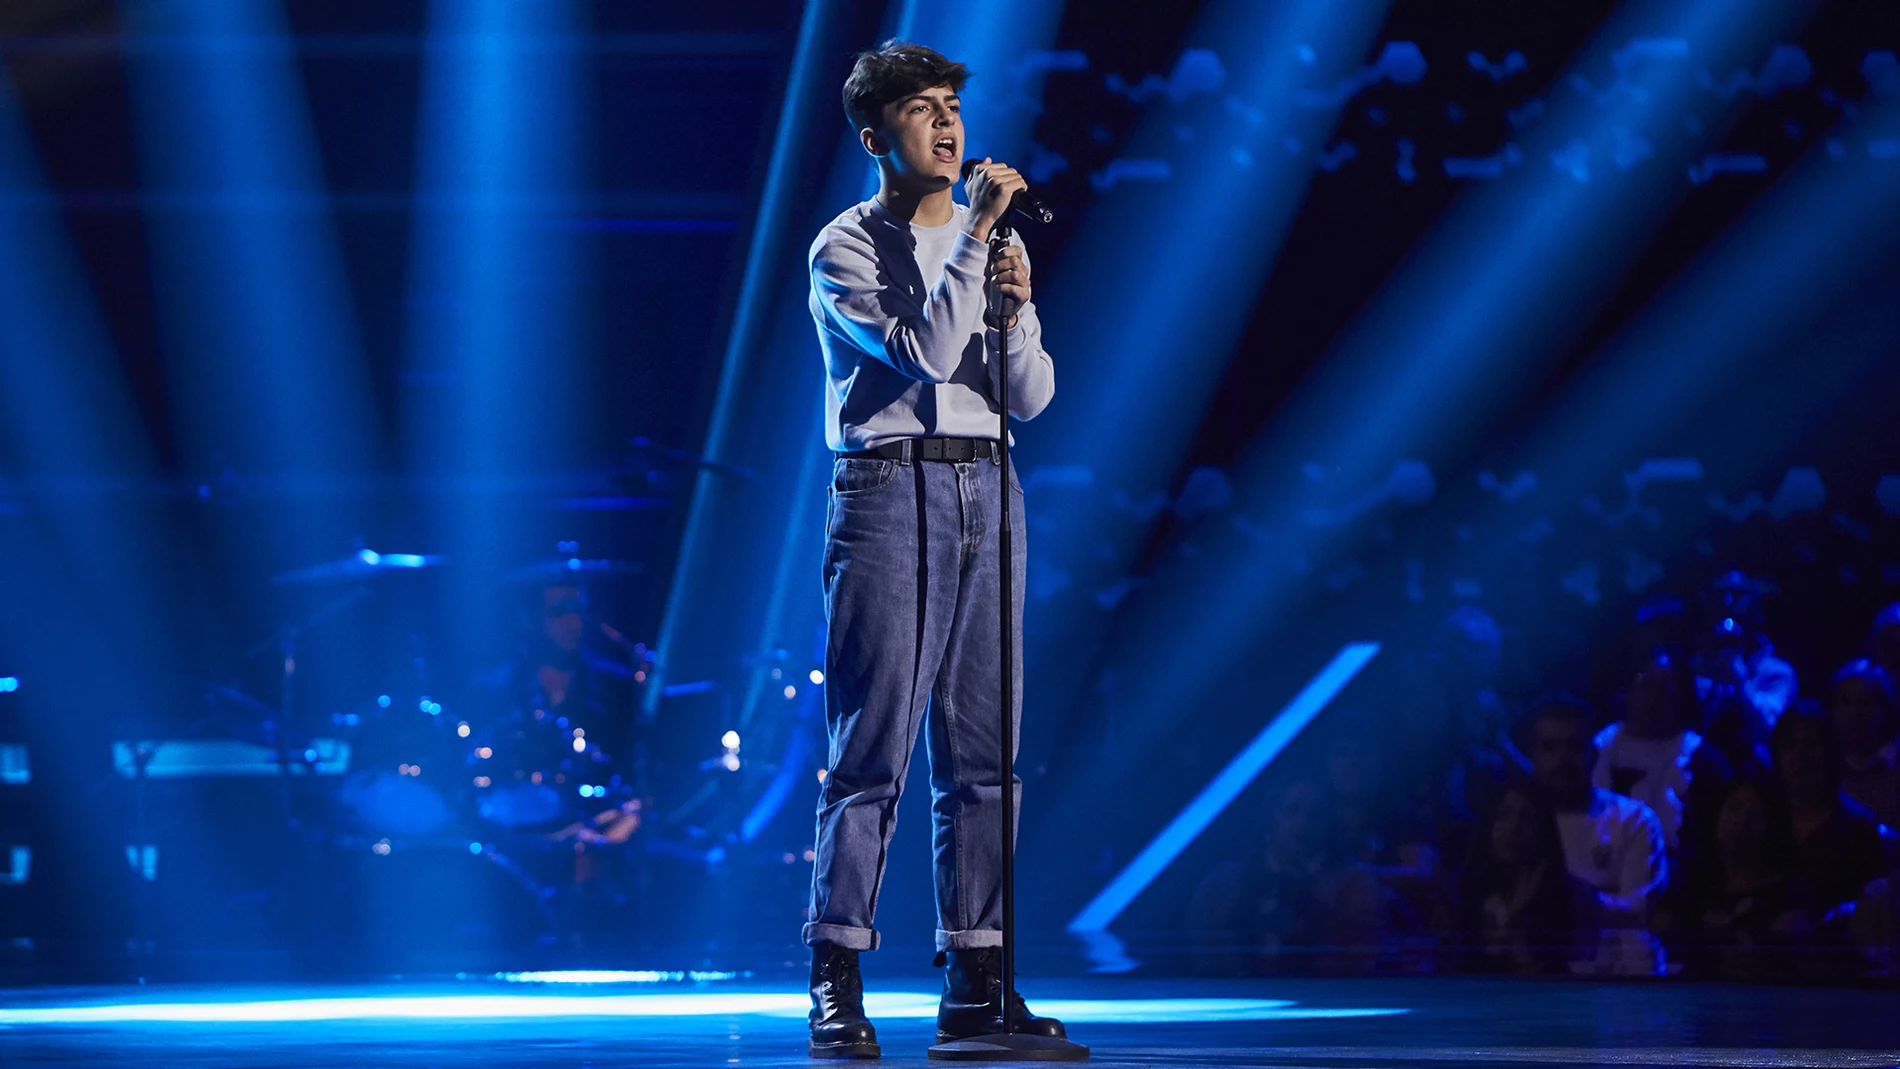 Adrián Belmonte canta 'Jealous' en las Audiciones a ciegas de 'La Voz Kids'